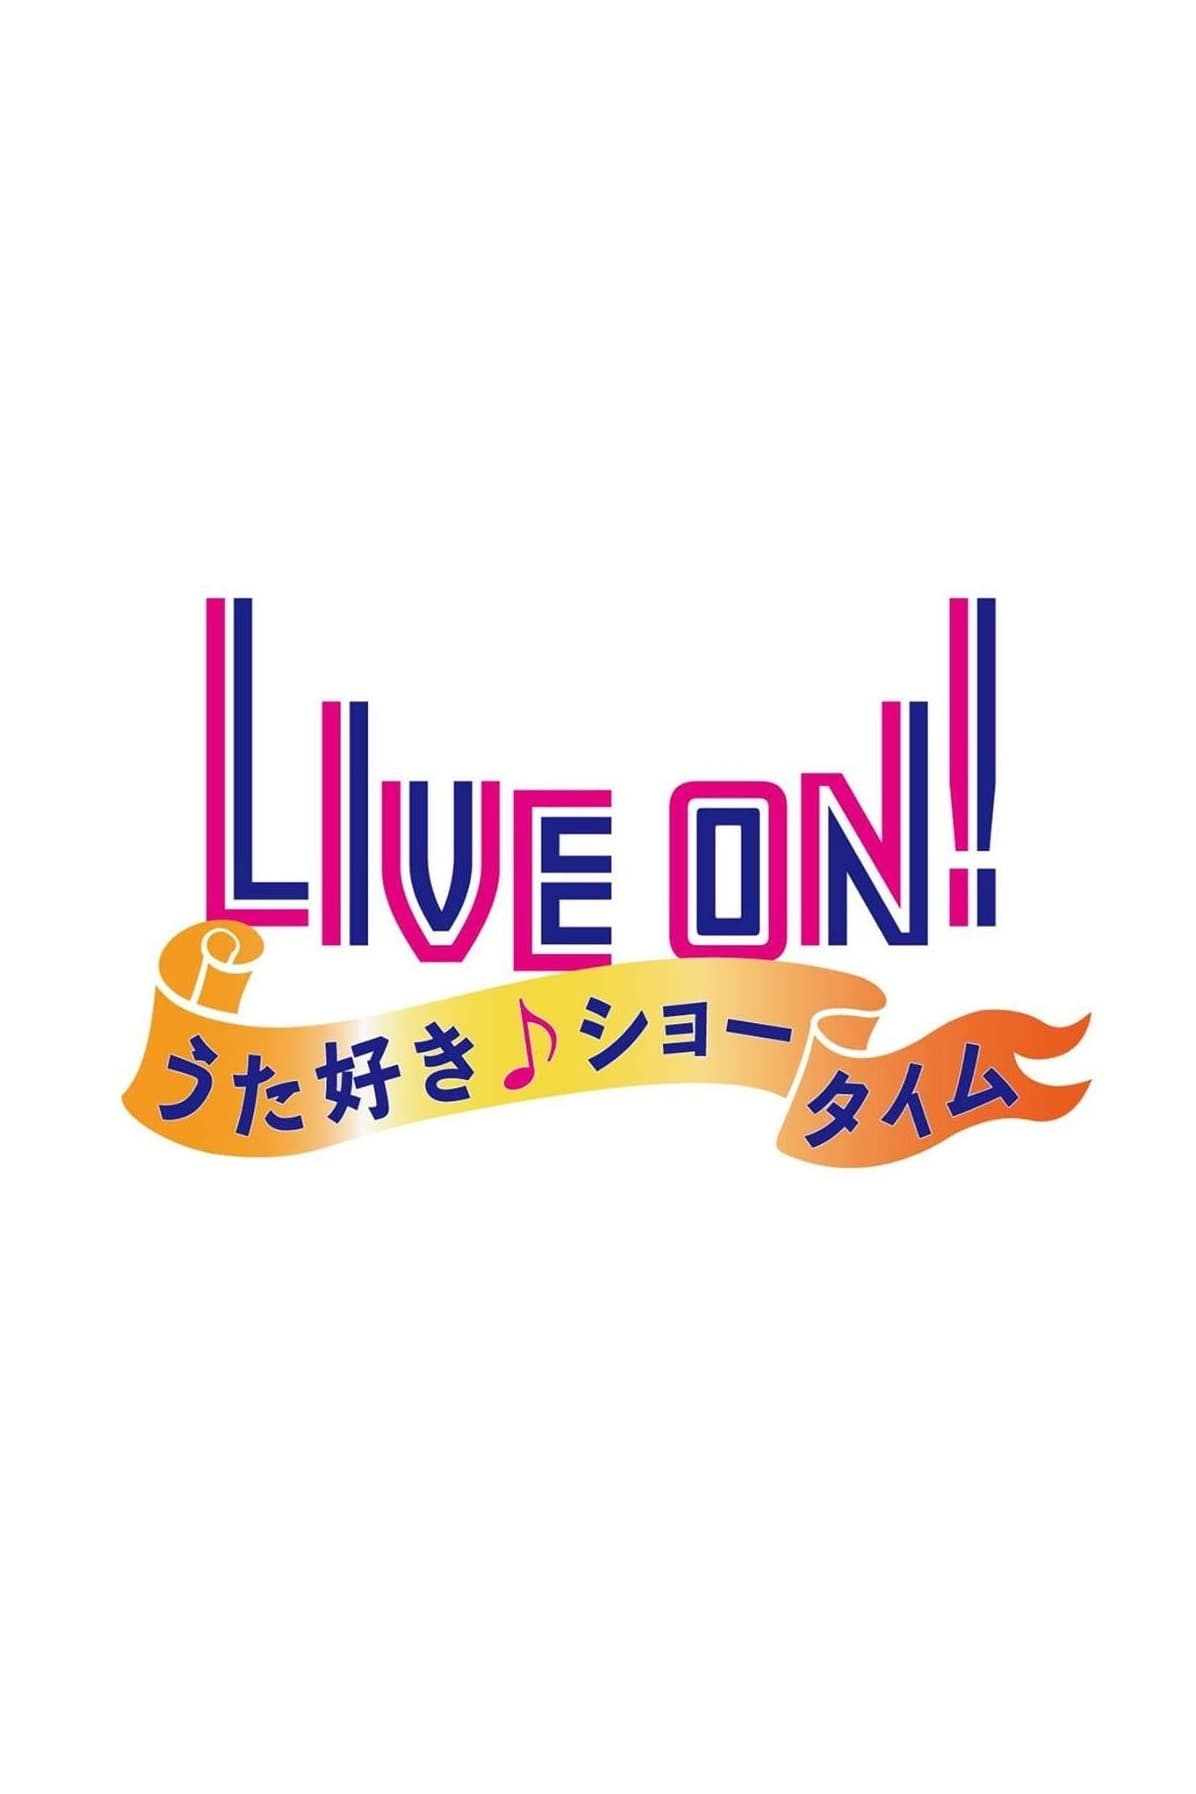 LIVE ON! うた好き☆ショータイム